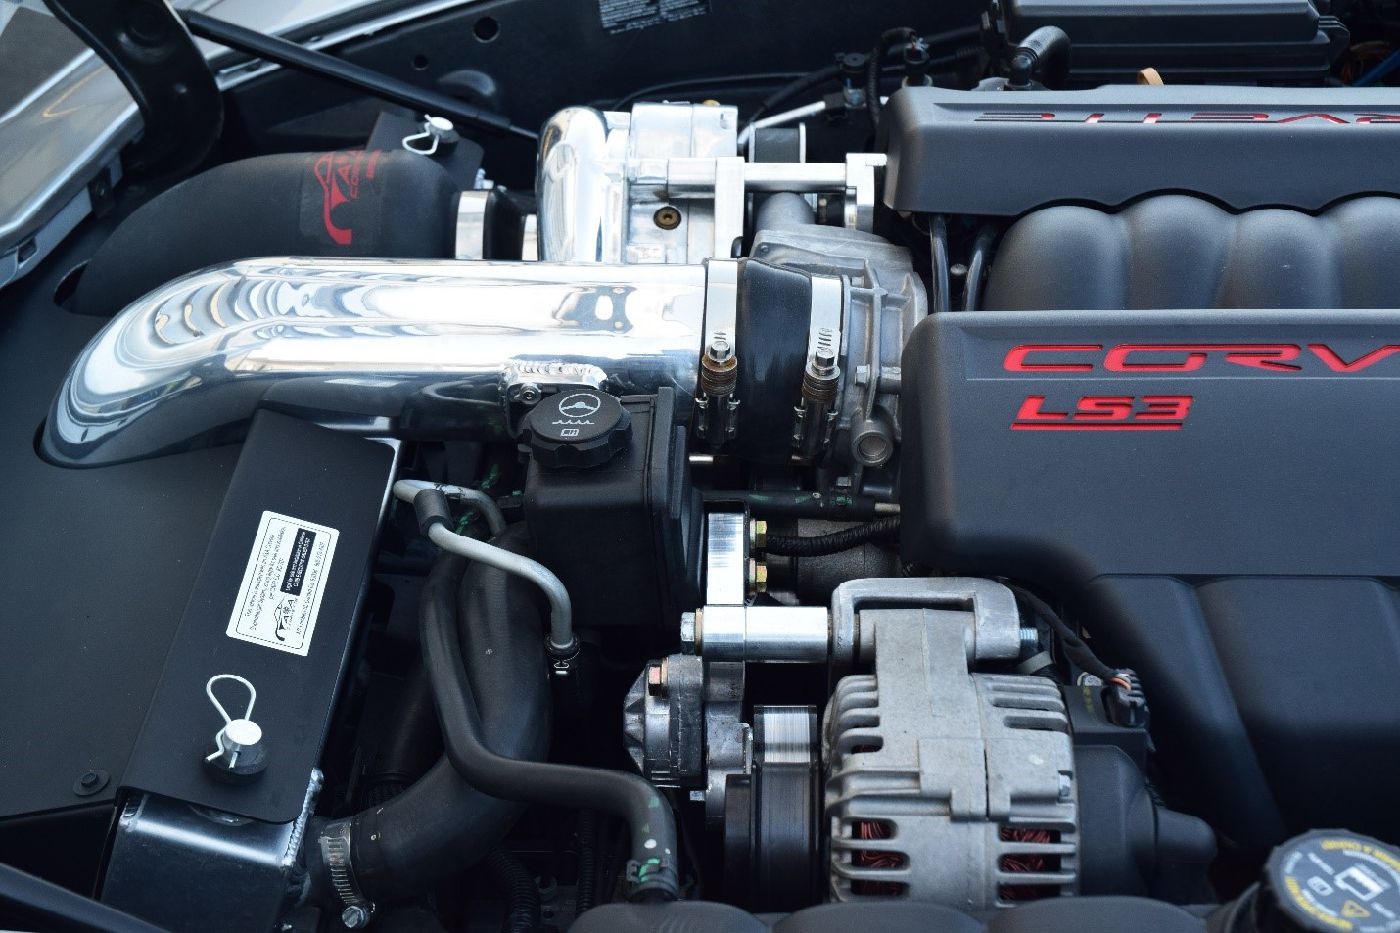 Corvette Supercharger Kit - WCC Exclusive Vortech : 2005-2013 C6